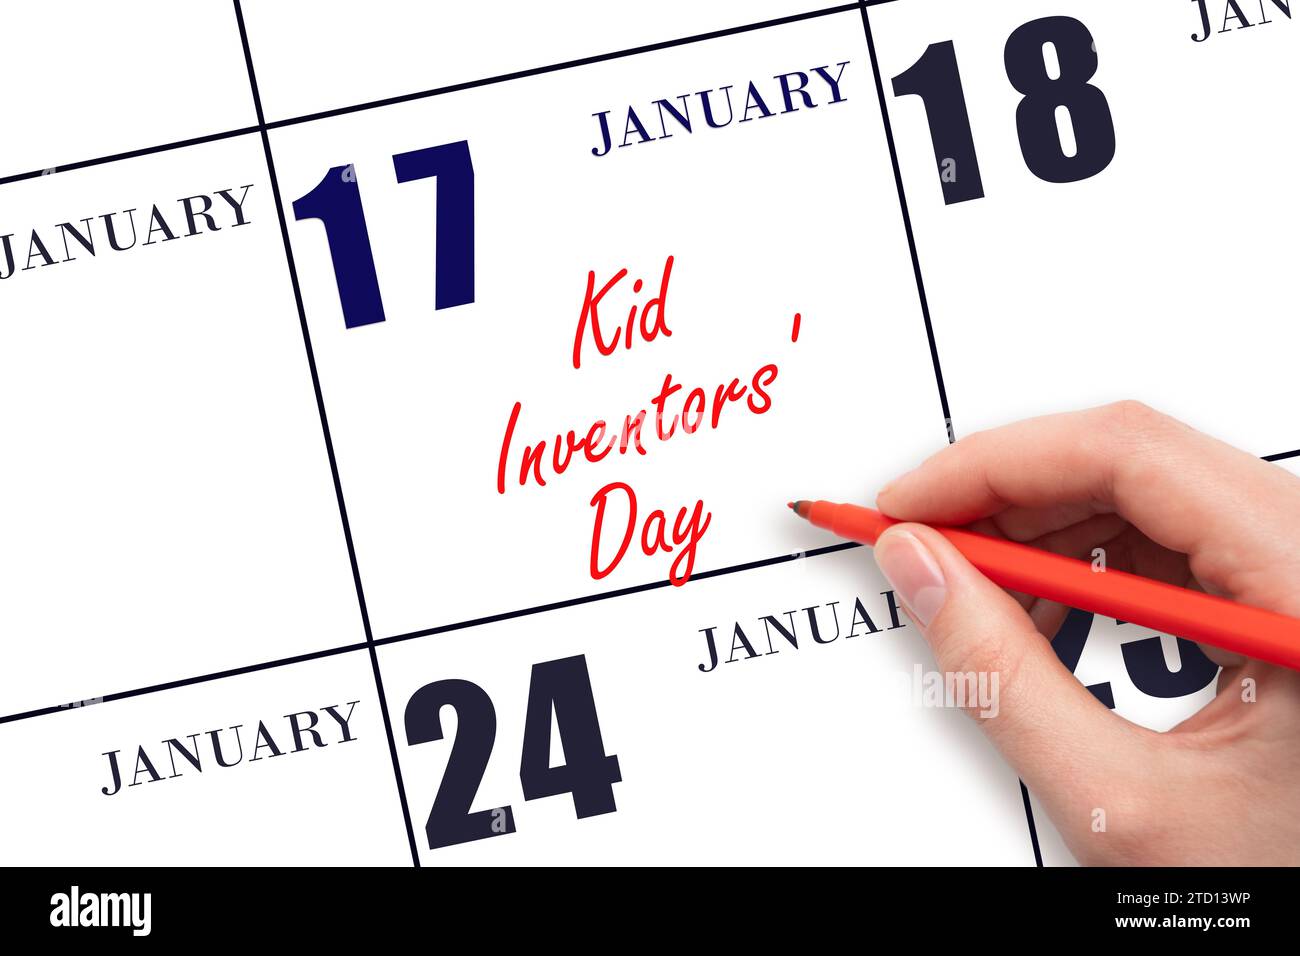 Januar: Handschrift Text Kid Erfinder' Day am Kalenderdatum. Speichern Sie das Datum. Urlaub. Tag des Jahres-Konzept. Stockfoto